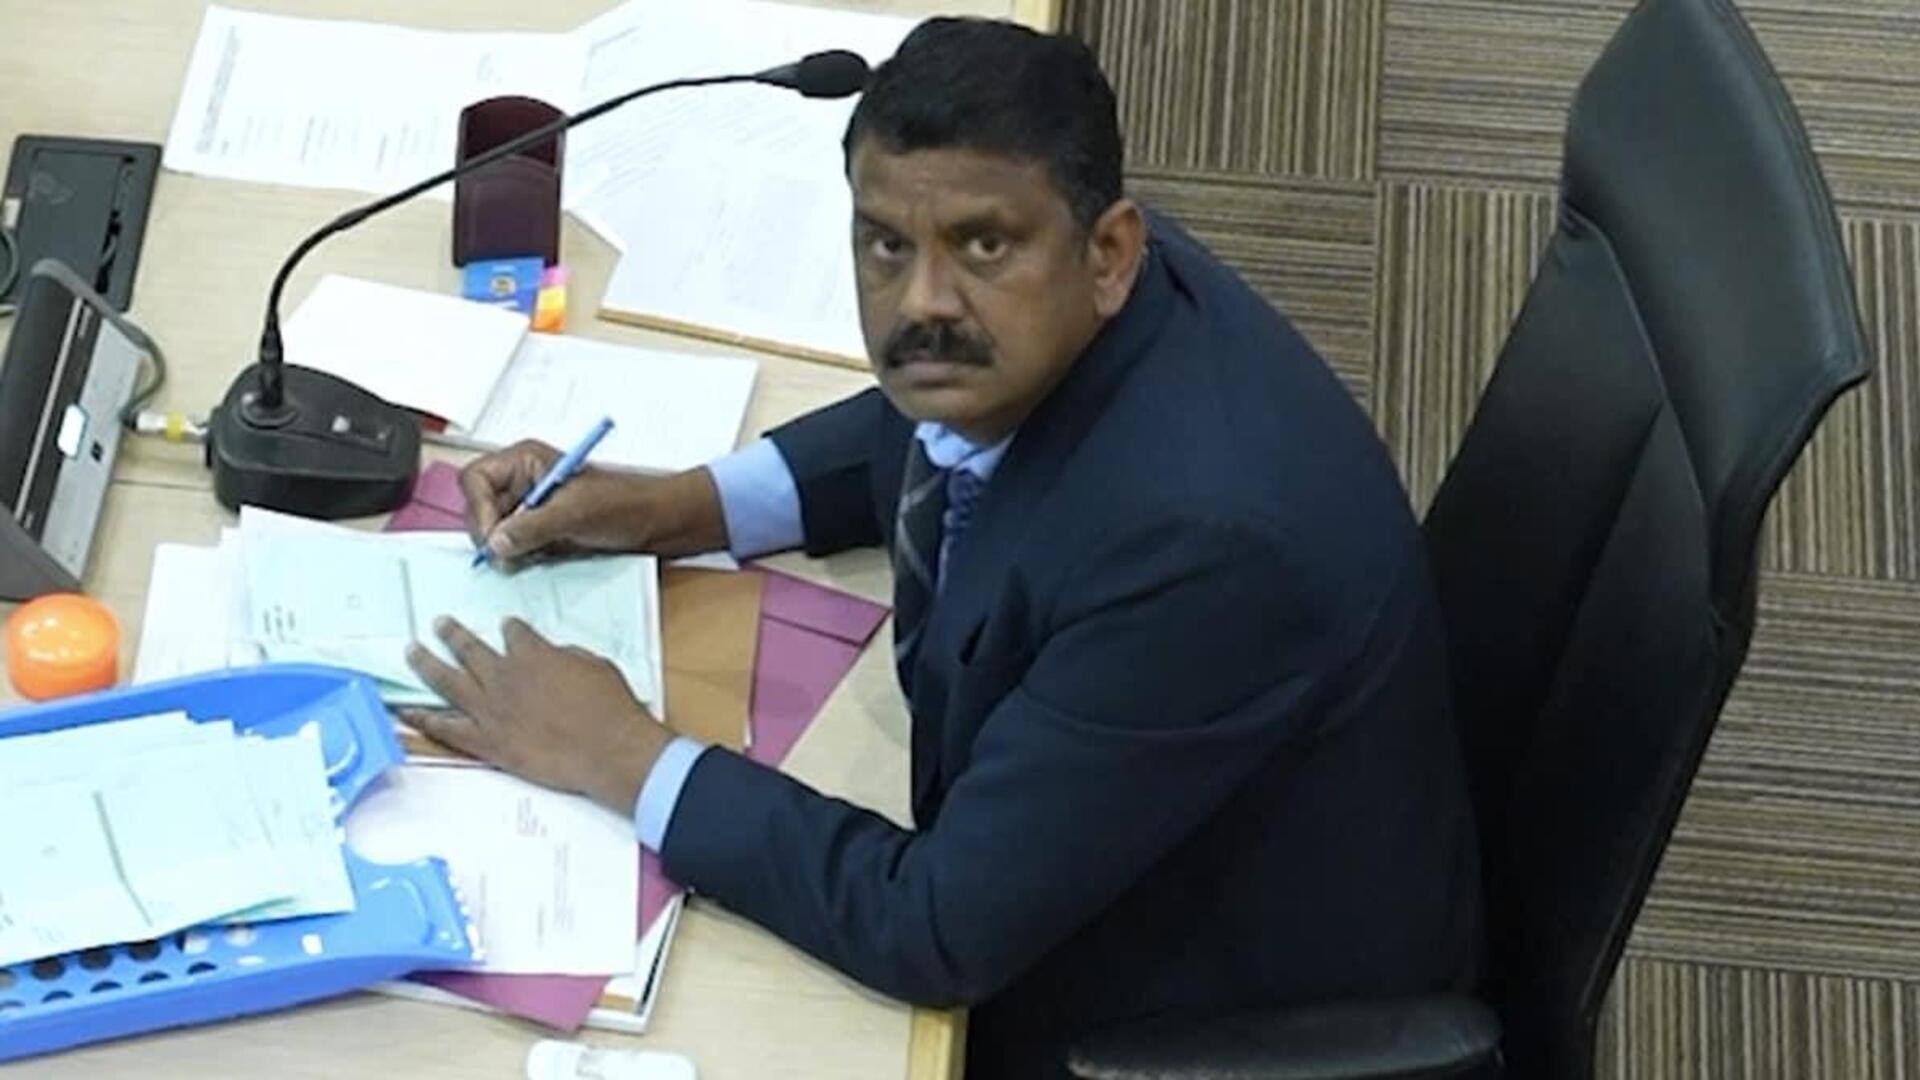 சண்டிகர் தேர்தல் அதிகாரி மீது வழக்கு தொடர வேண்டும்: உச்ச நீதிமன்றம் வலியுறுத்தல் 